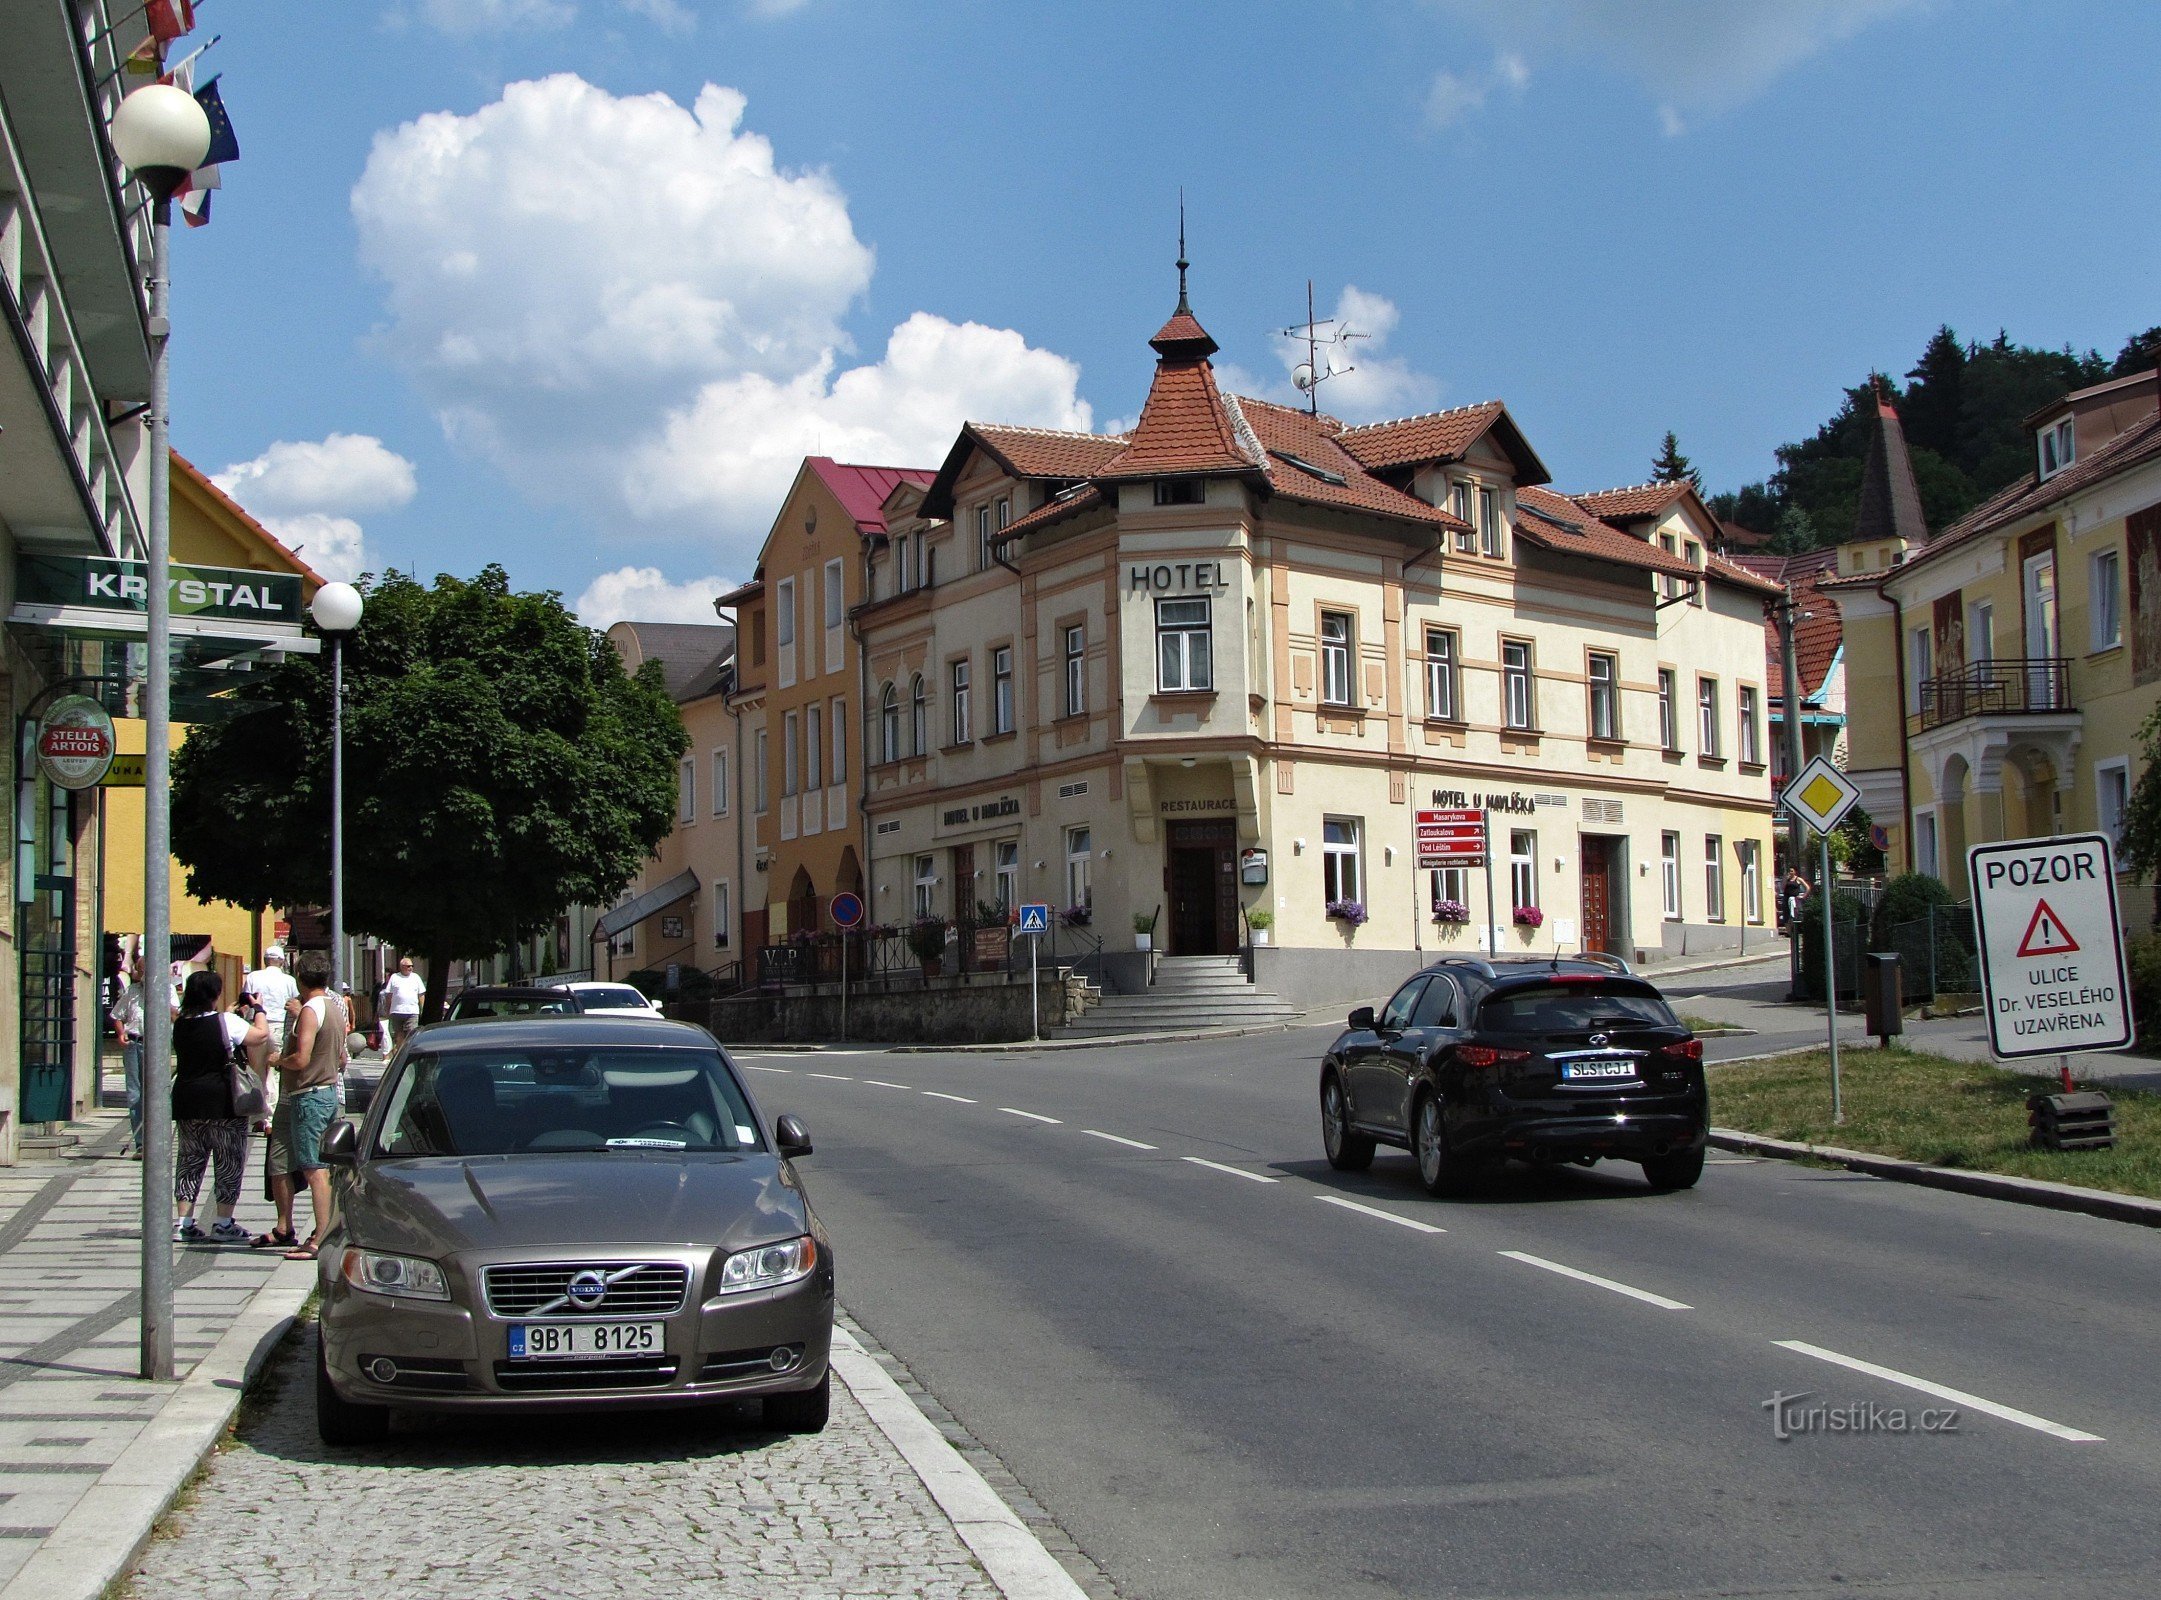 Cazare la hotelul Havlíček din Luhačovice